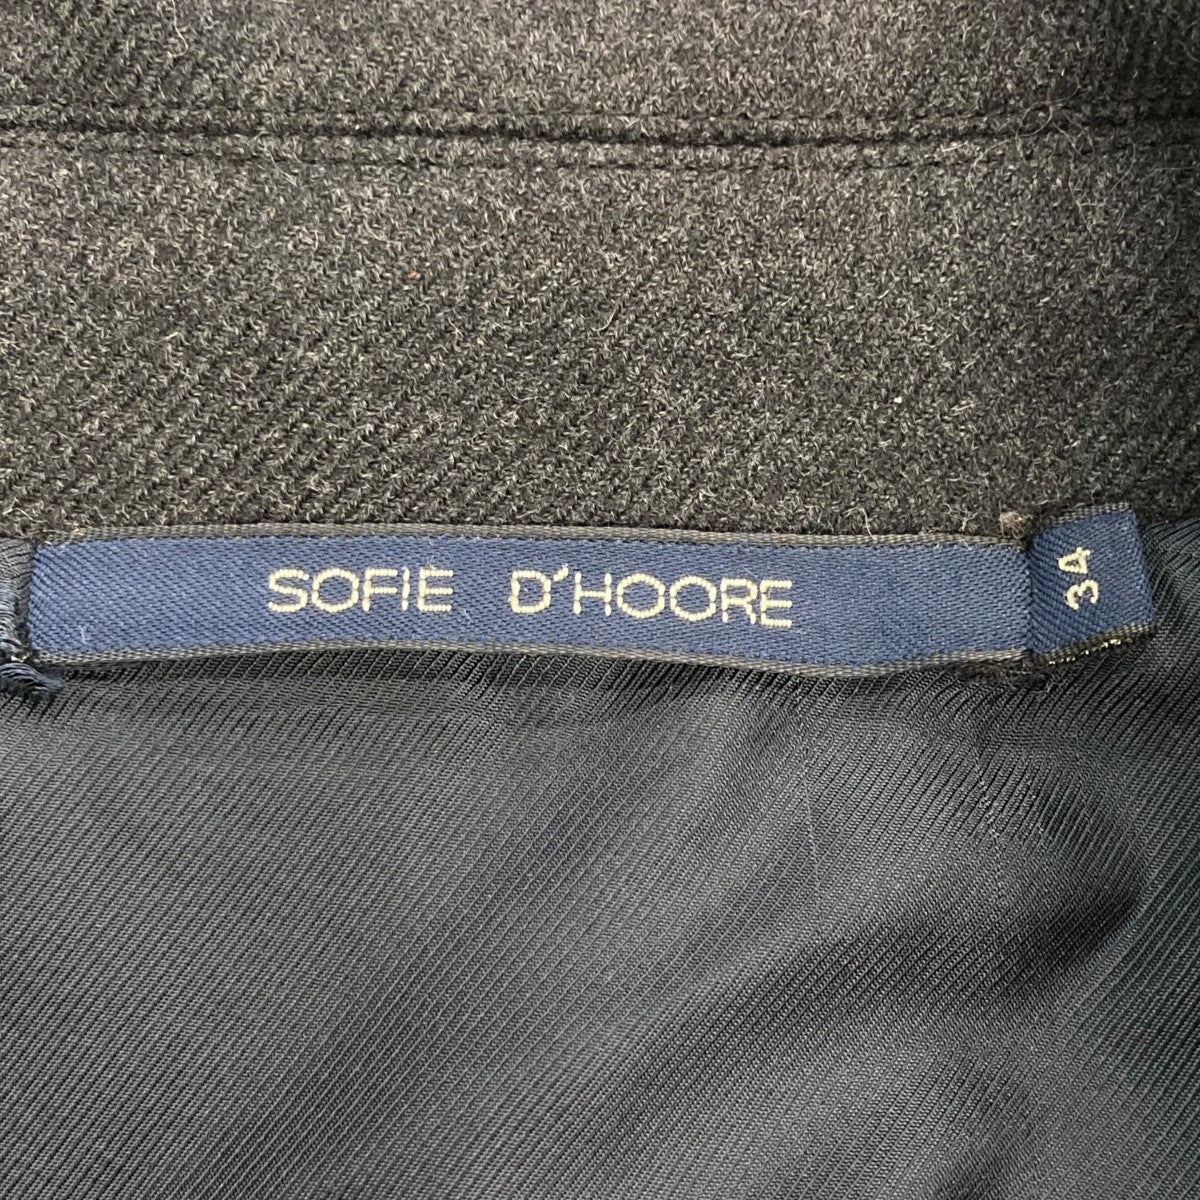 SOFIE D'HOORE(ソフィードール) ダブルステンカラーコート グレー ...